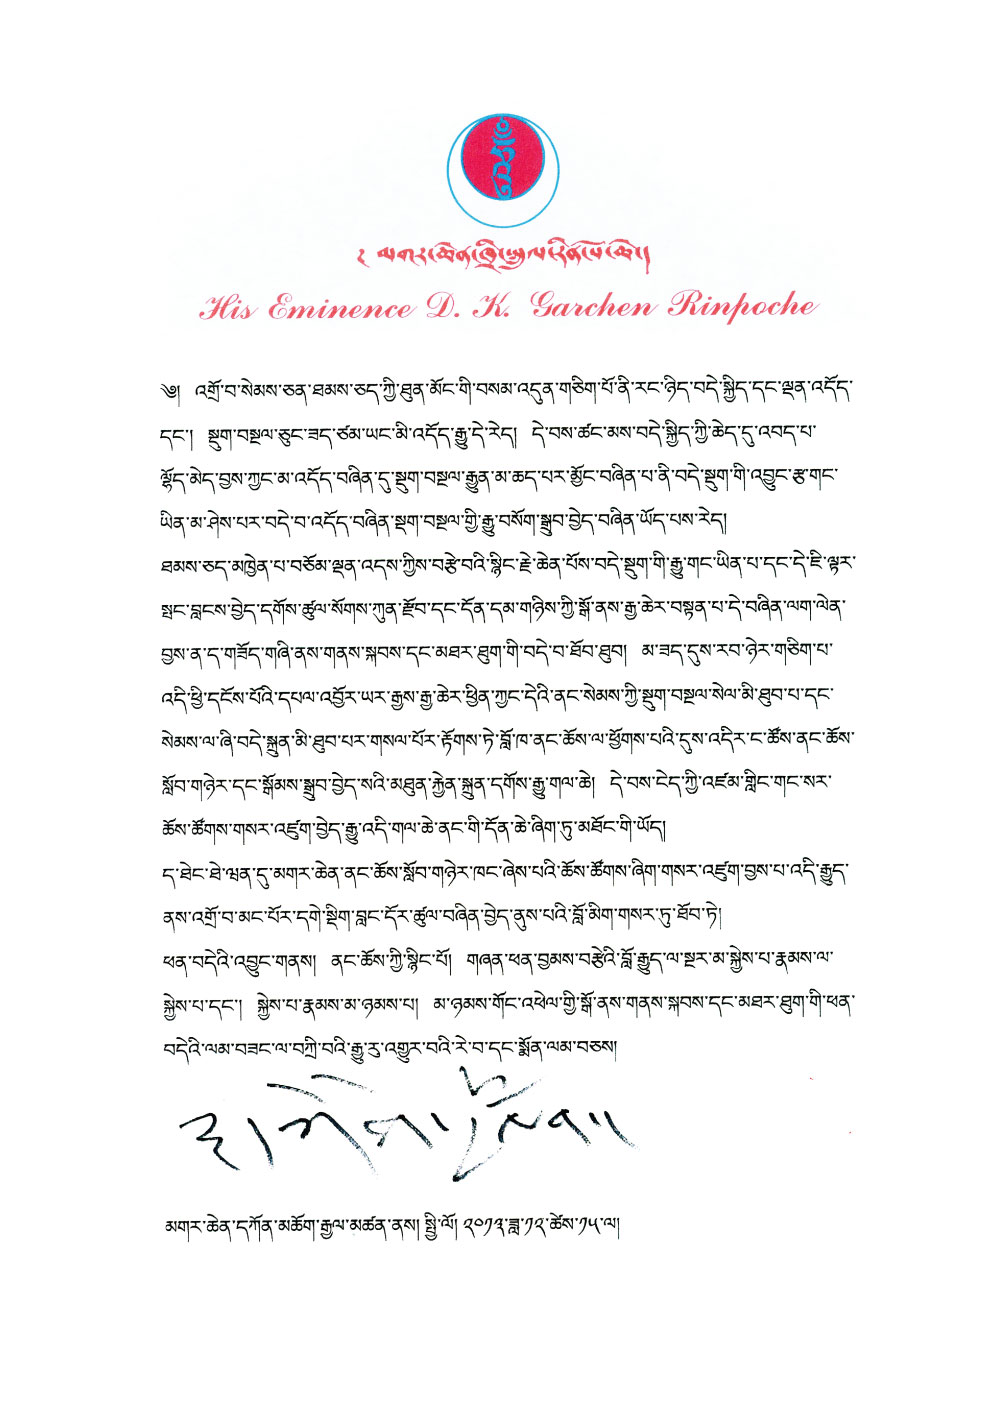 噶千仁波切寫給中心的信-藏文版